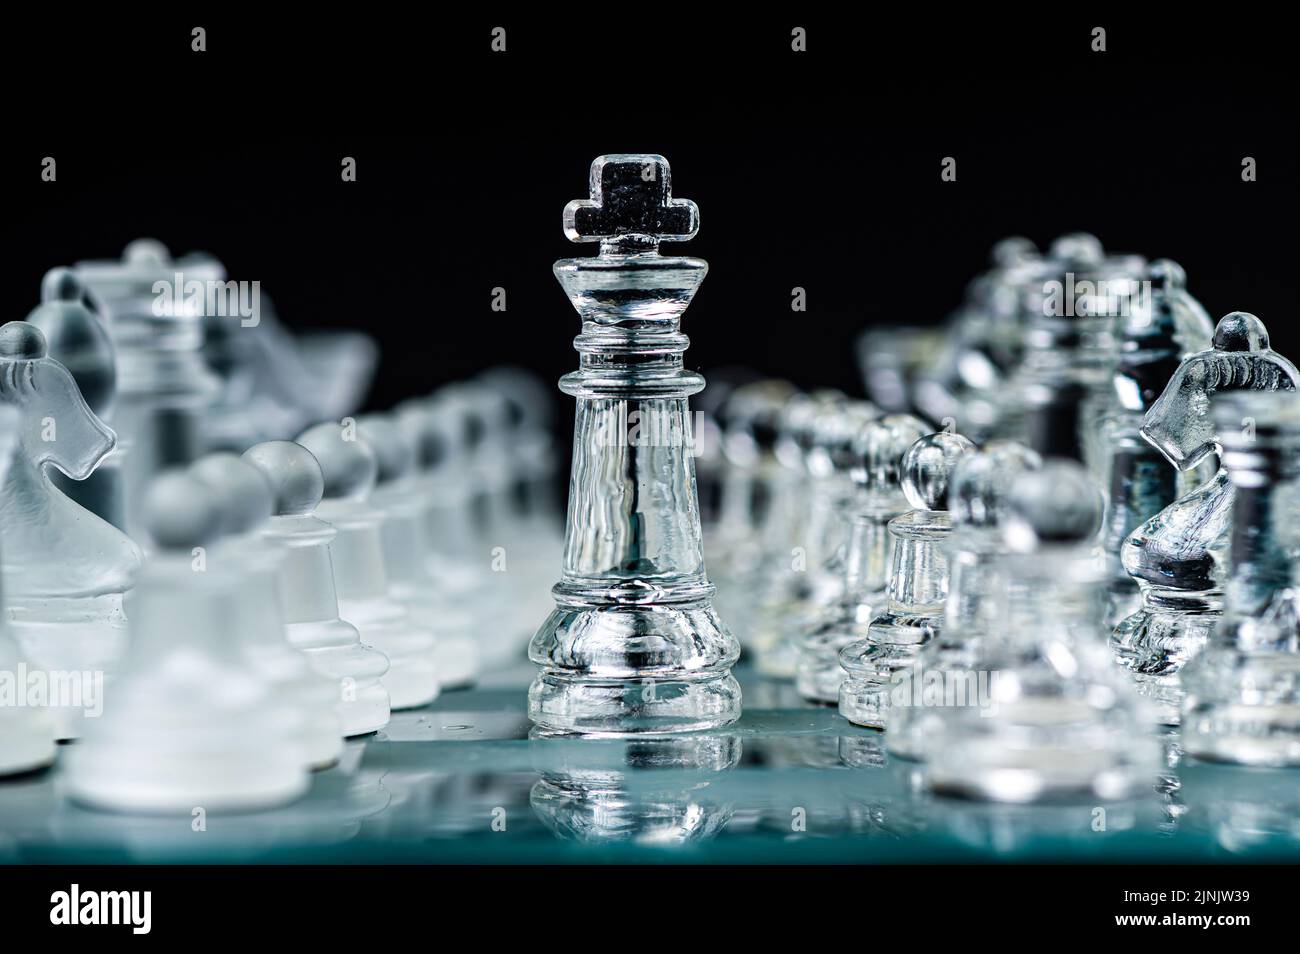 Pièces d'échecs en verre transparent sur fond sombre. Leadership, confrontation et concept de stratégie Banque D'Images